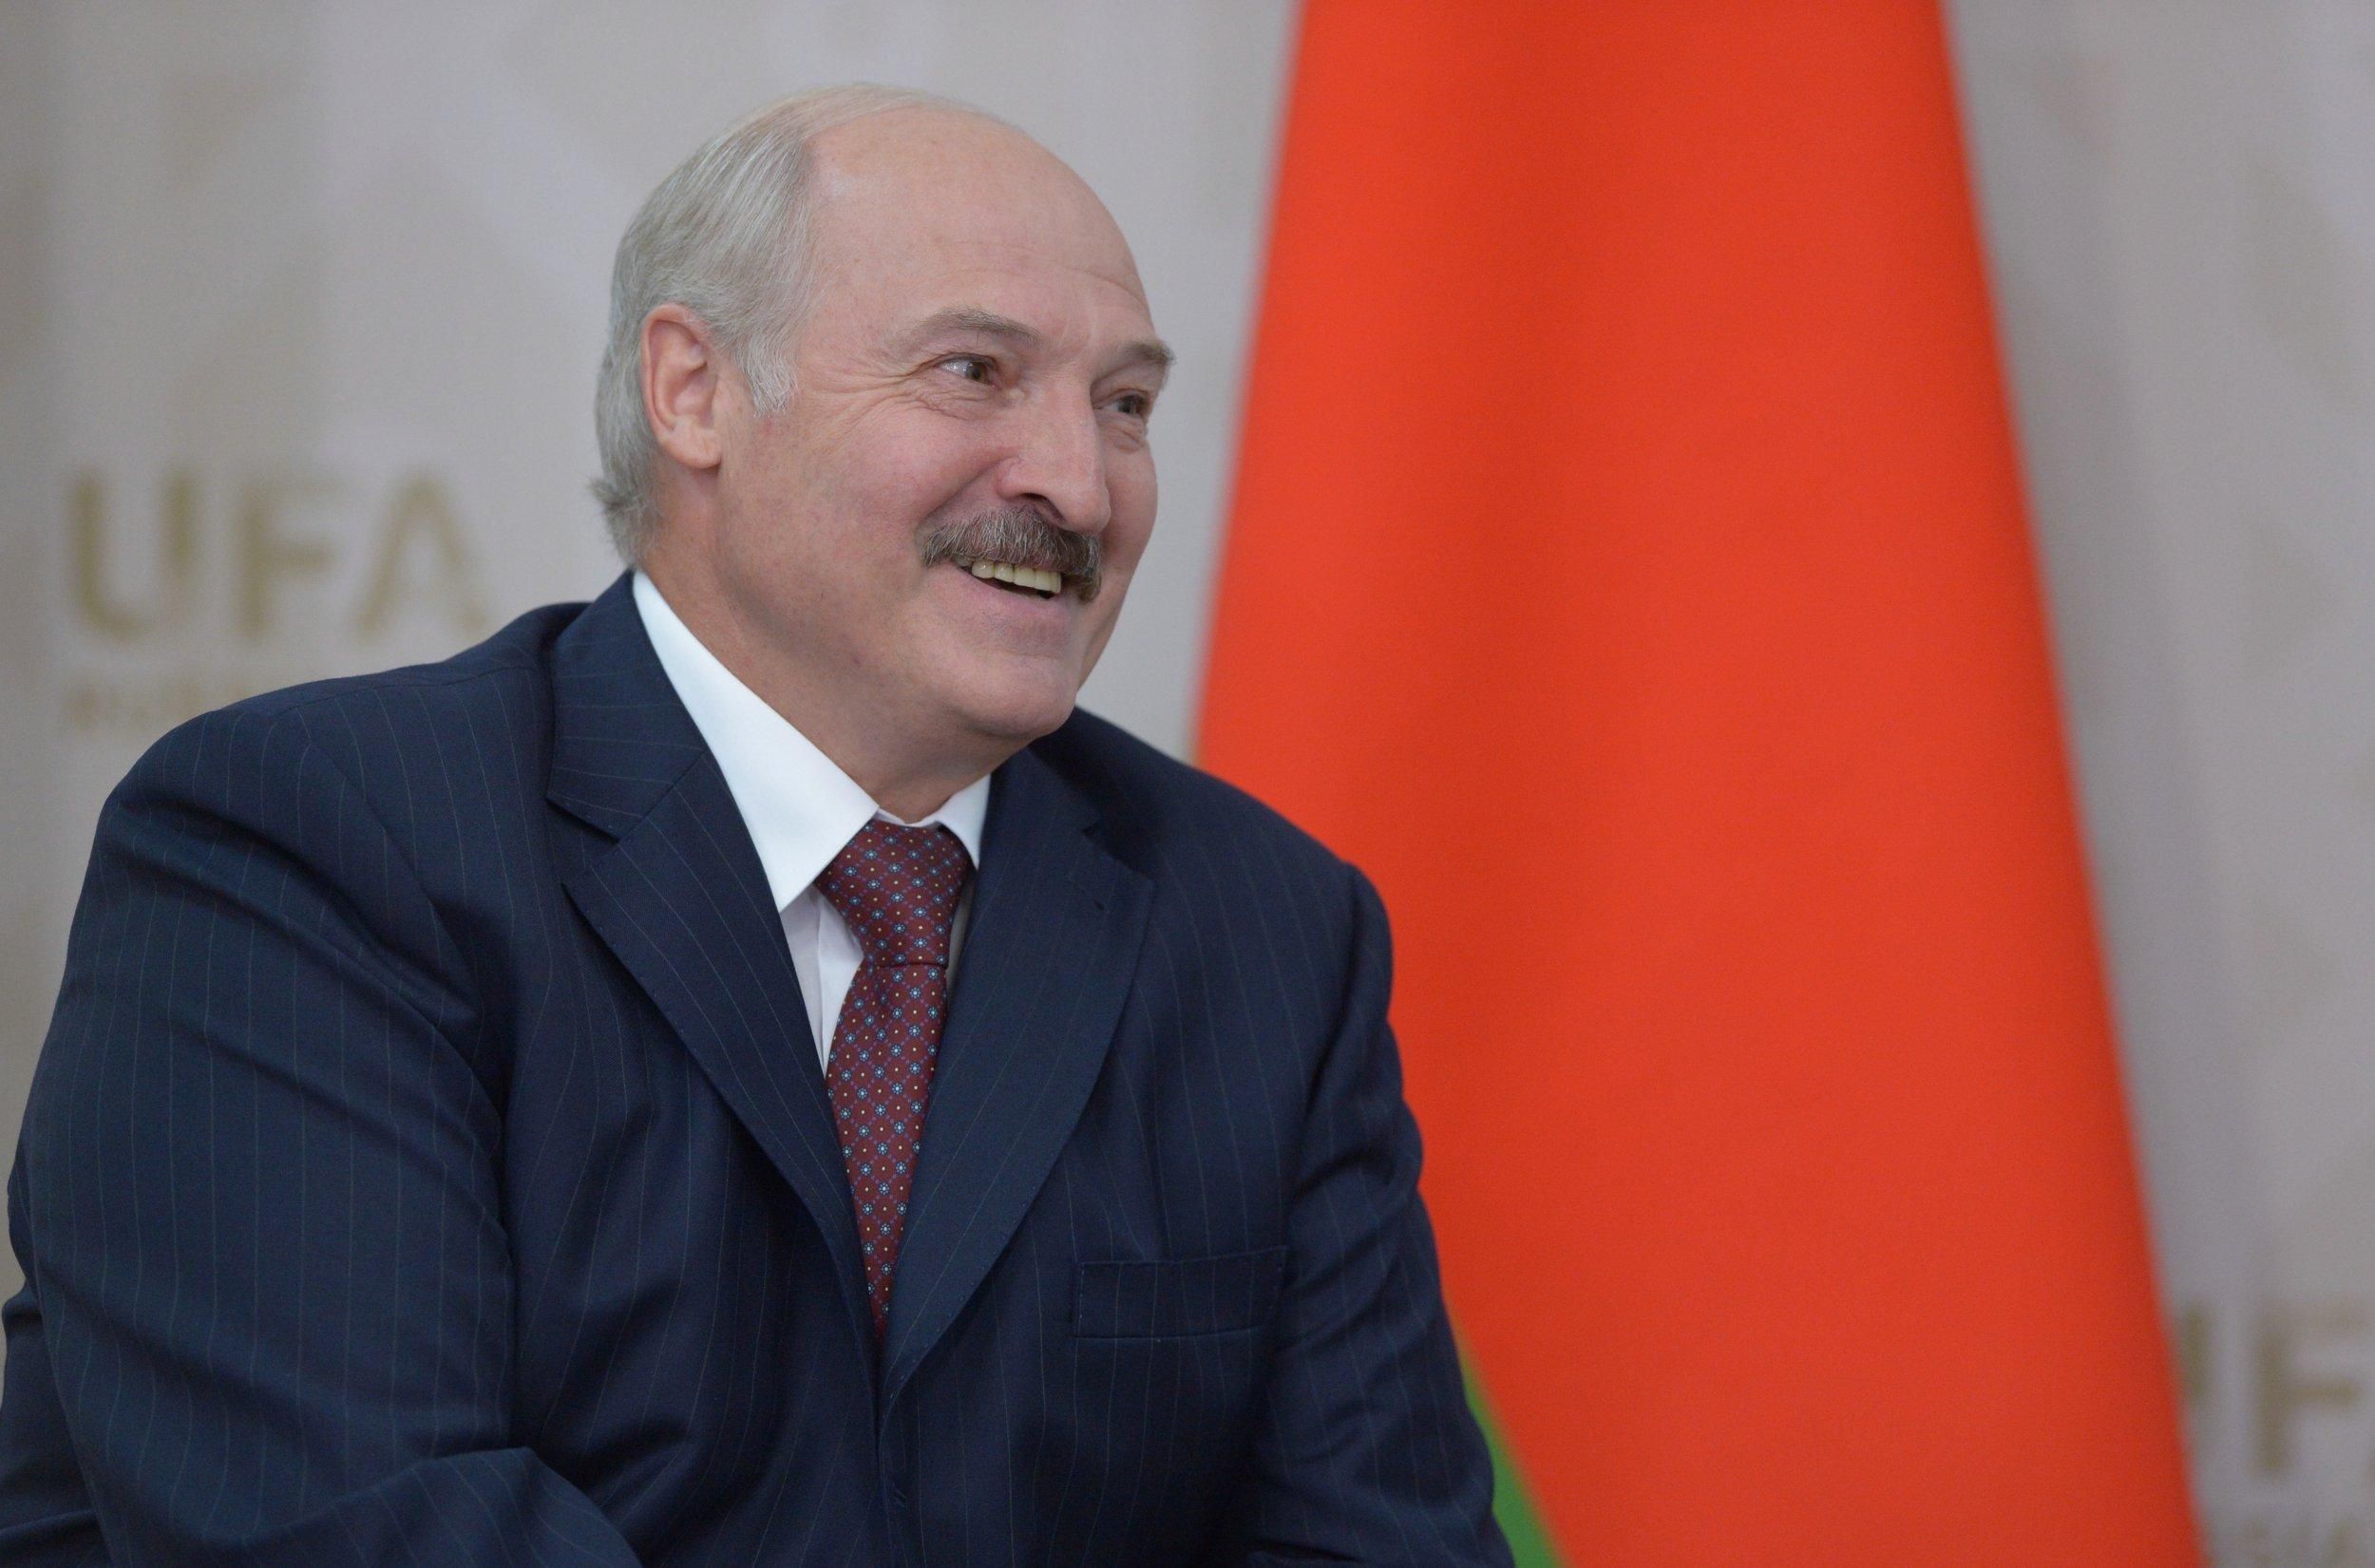 Окремий будинок у союзному будівництві: як Лукашенко бачить об’єднання з РФ